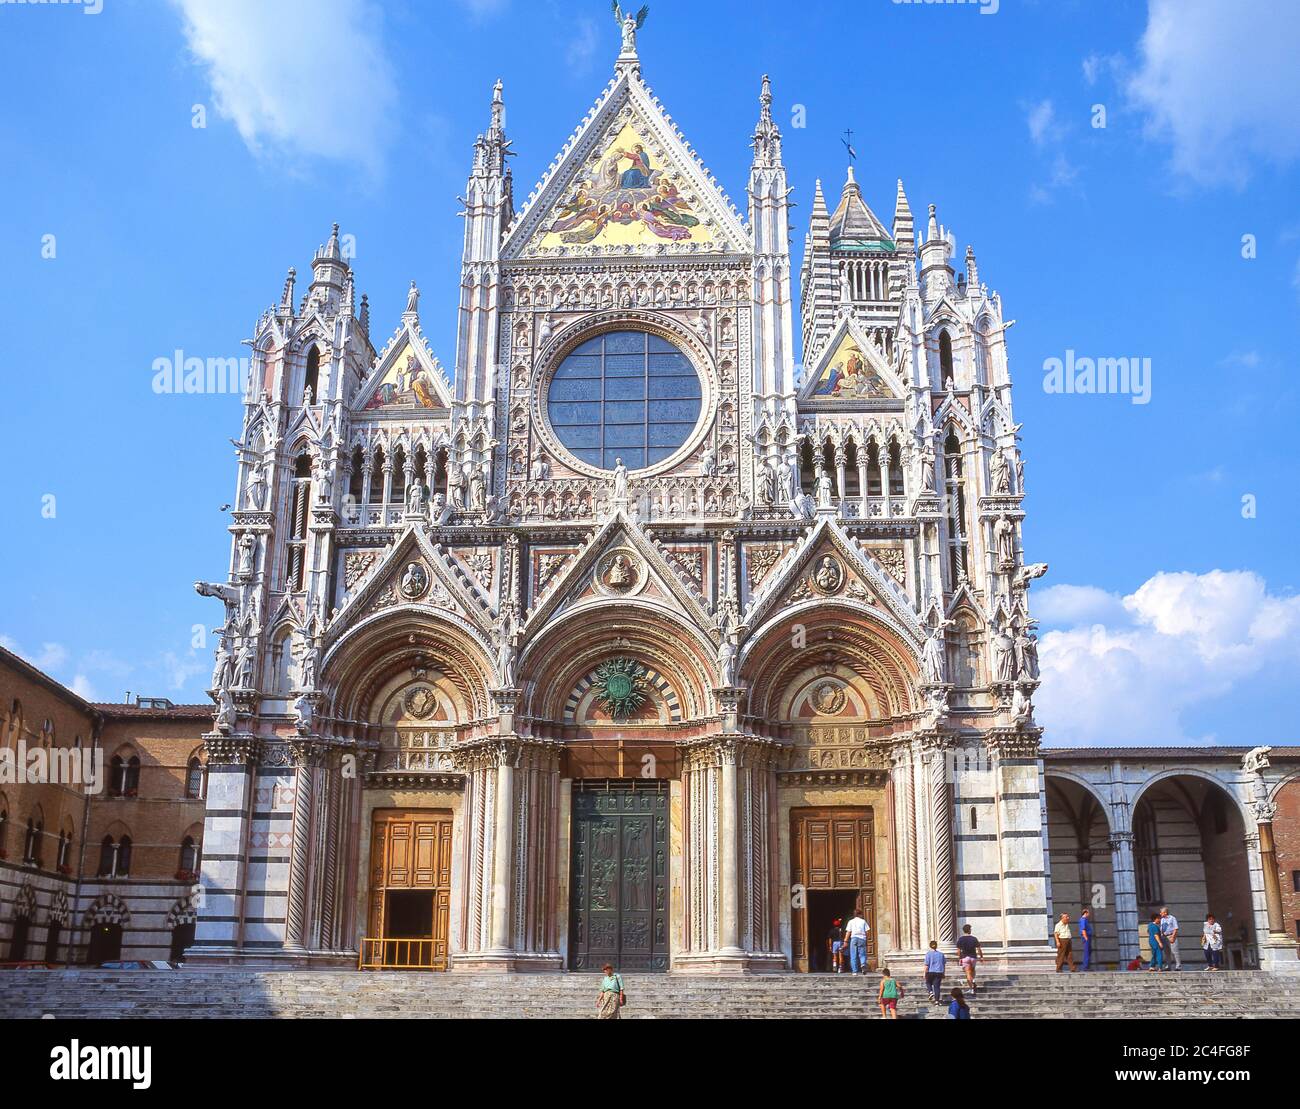 Duomo di Siena (Catedral de Siena), Siena (Siena), provincia de Siena, la Región de Toscana, Italia Foto de stock